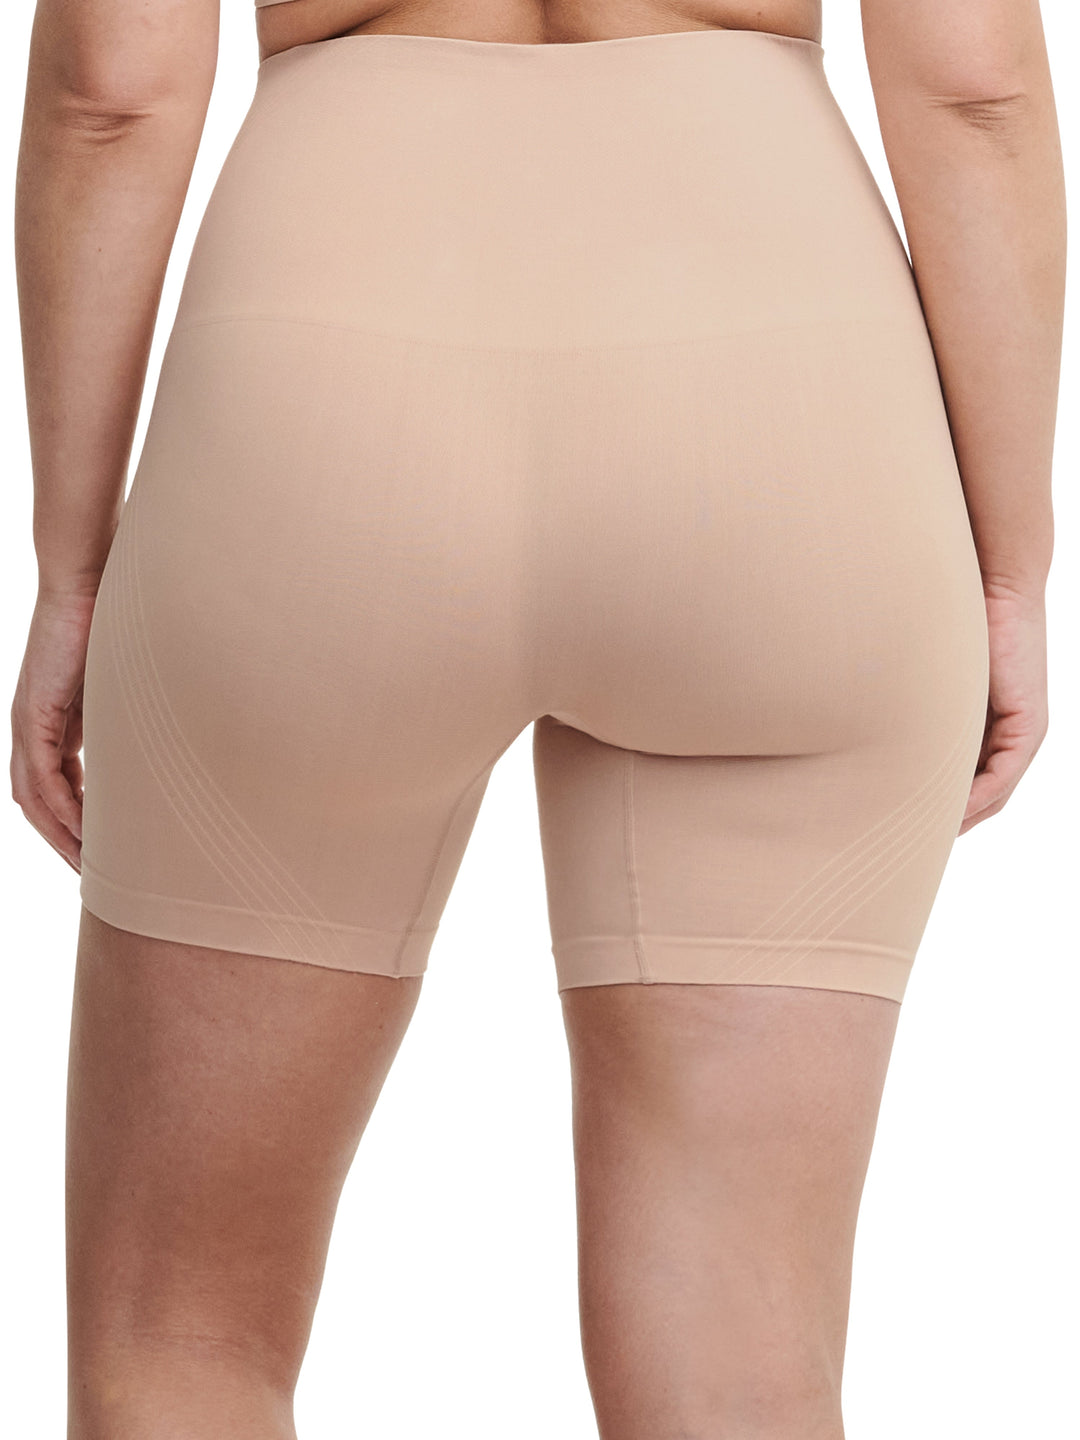 Pantalones cortos ciclistas moldeadores Chantelle Smooth Comfort - Sirocco Shorts Chantelle